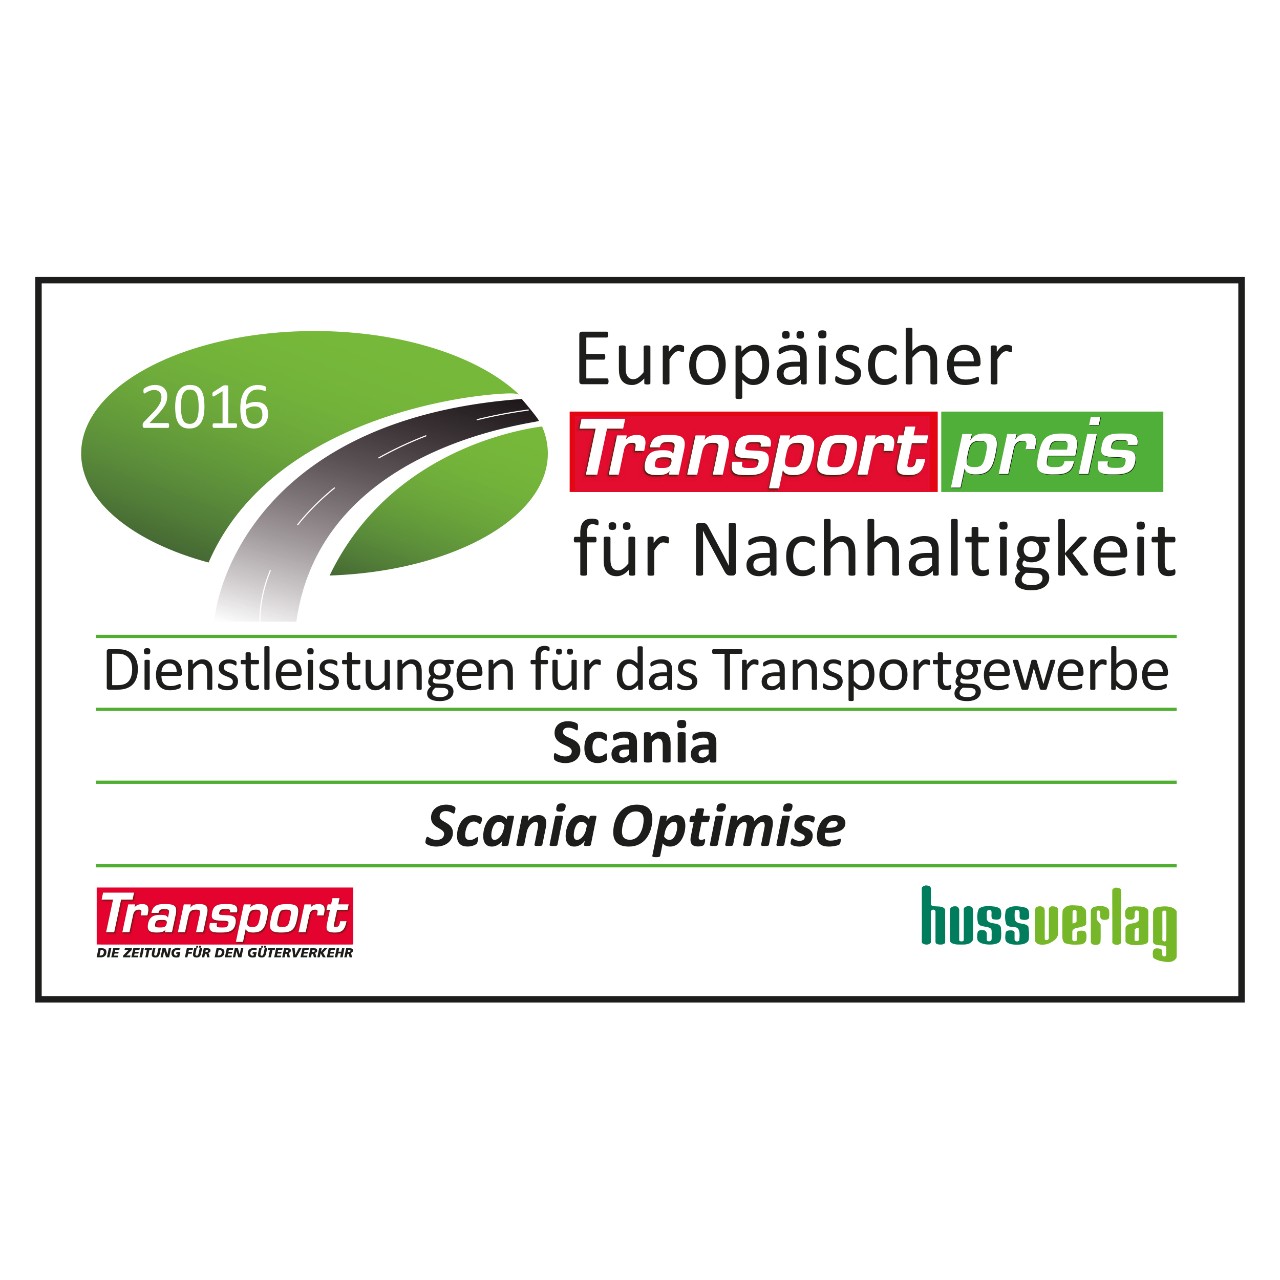 Europäischer Transportpreis für Nachhaltigkeit 2016